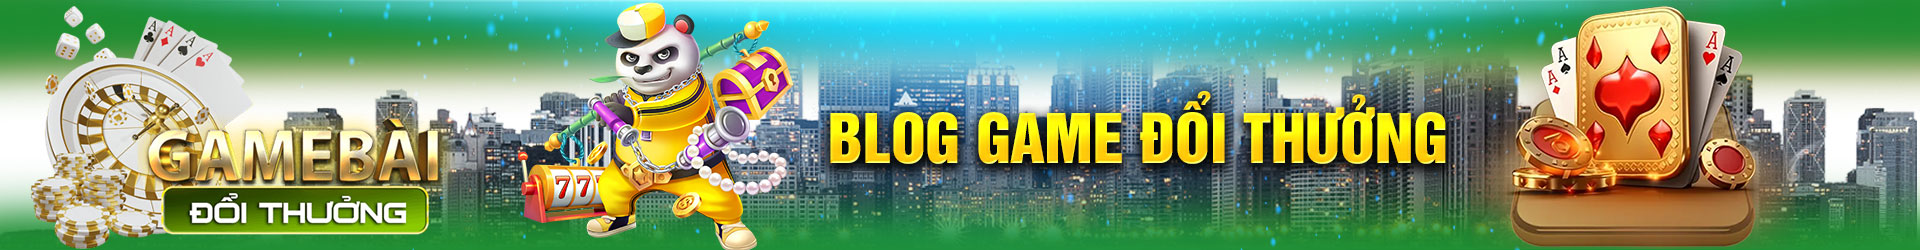 blog-game-doi-thuong